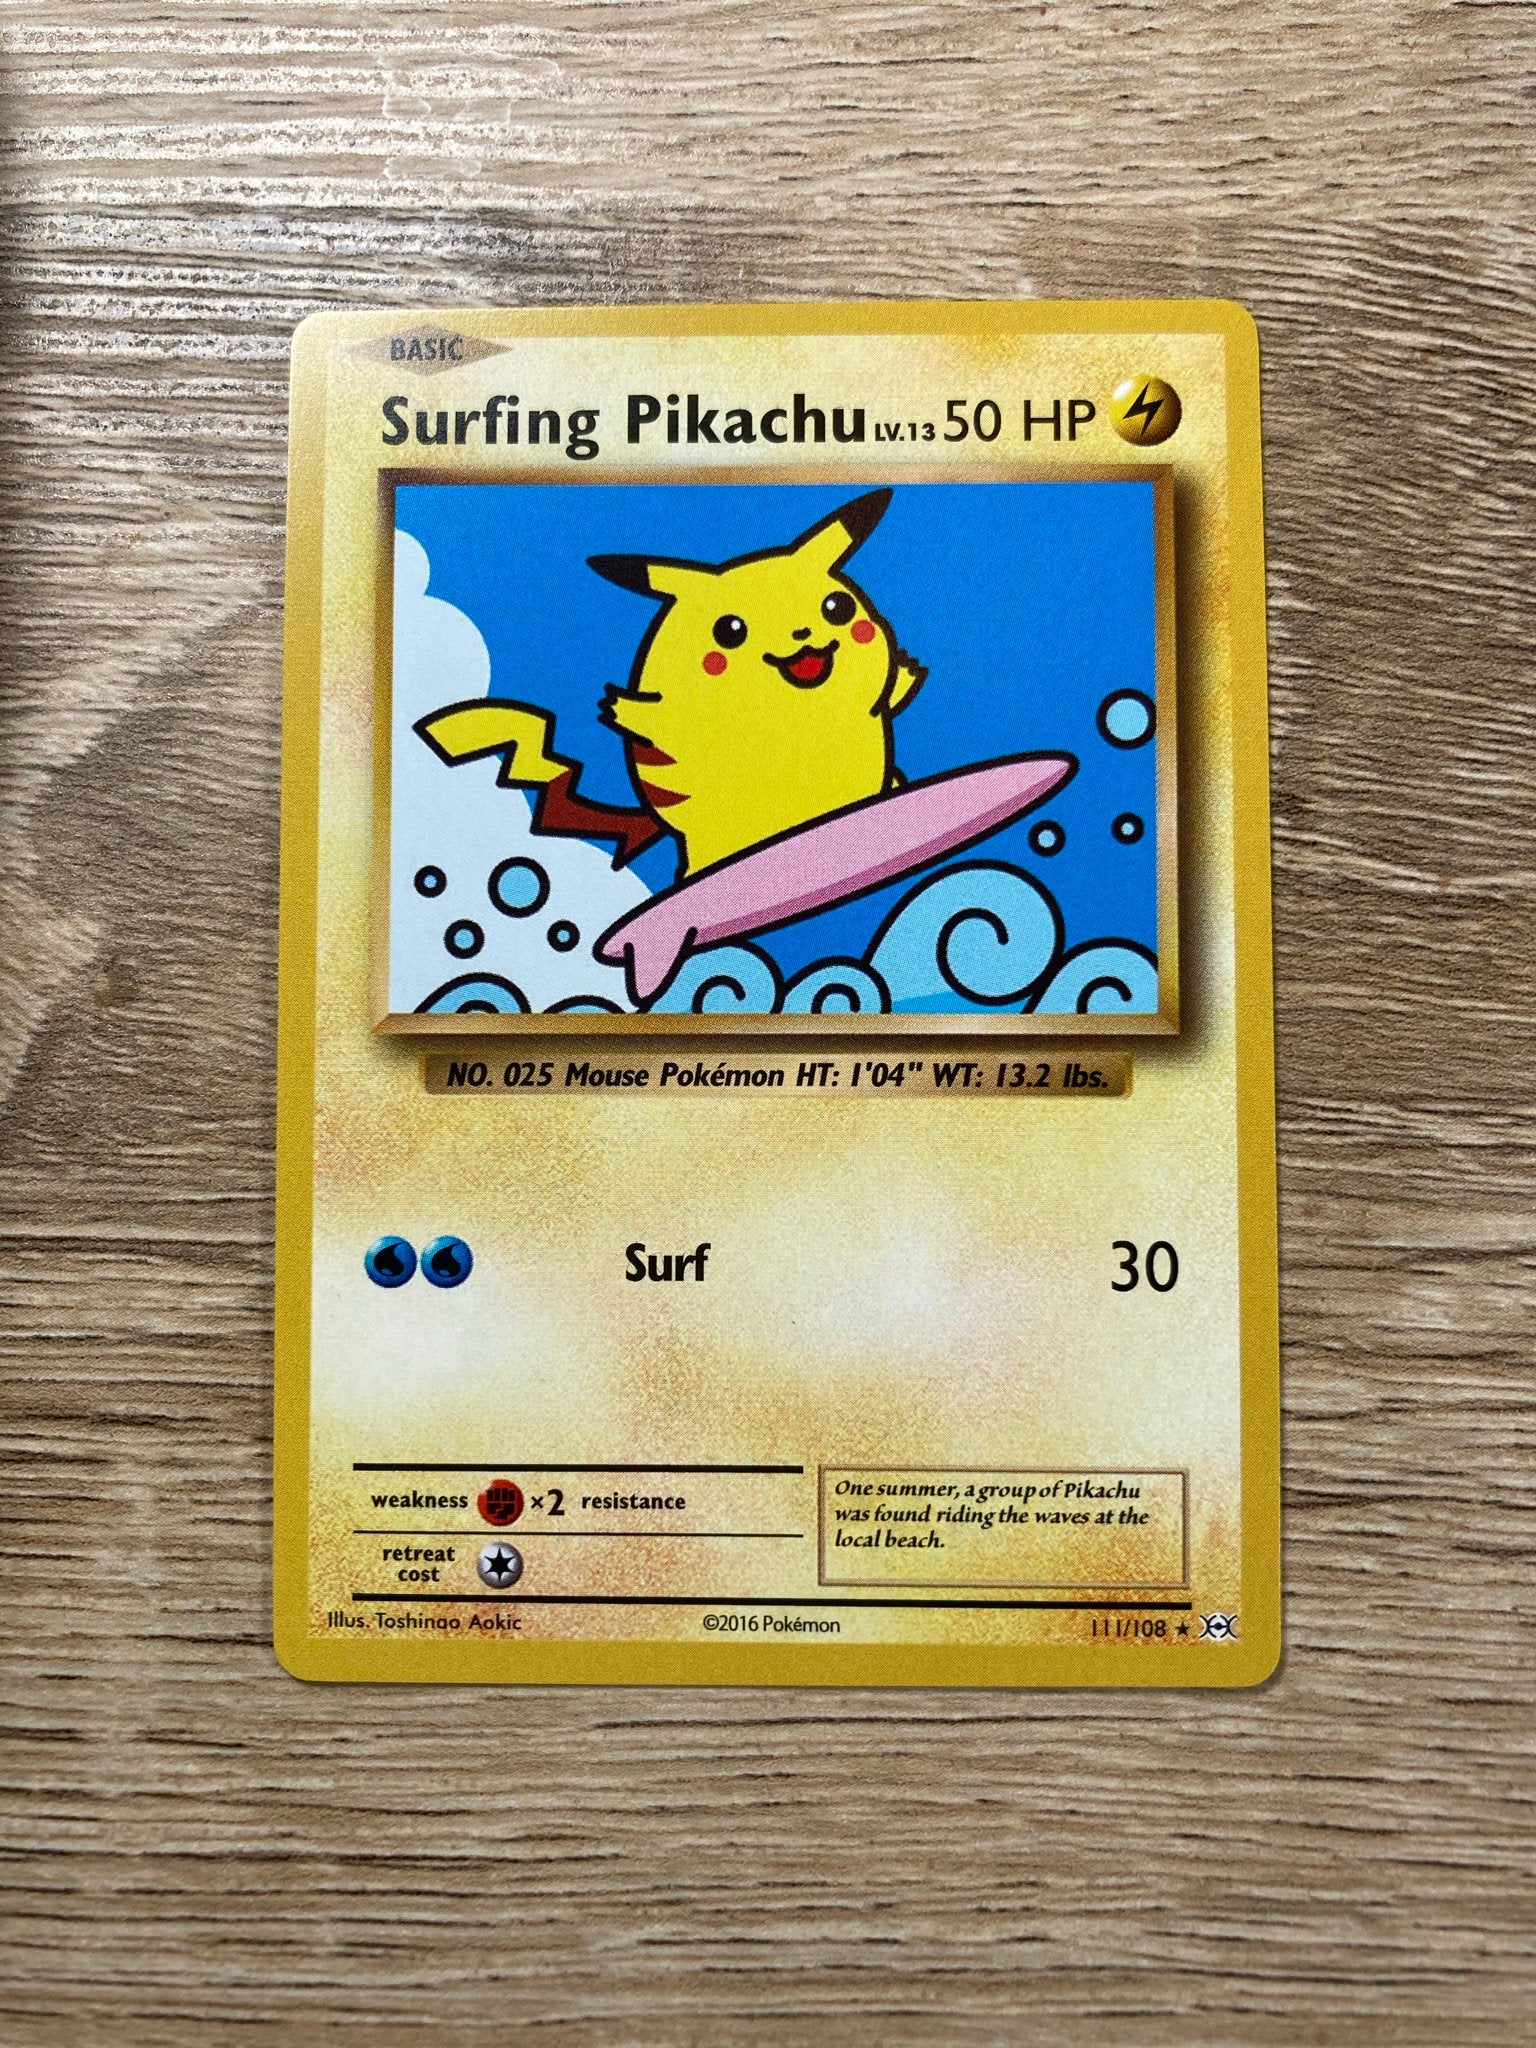 Holo Raikou and Pikachu Poke Custom Card 